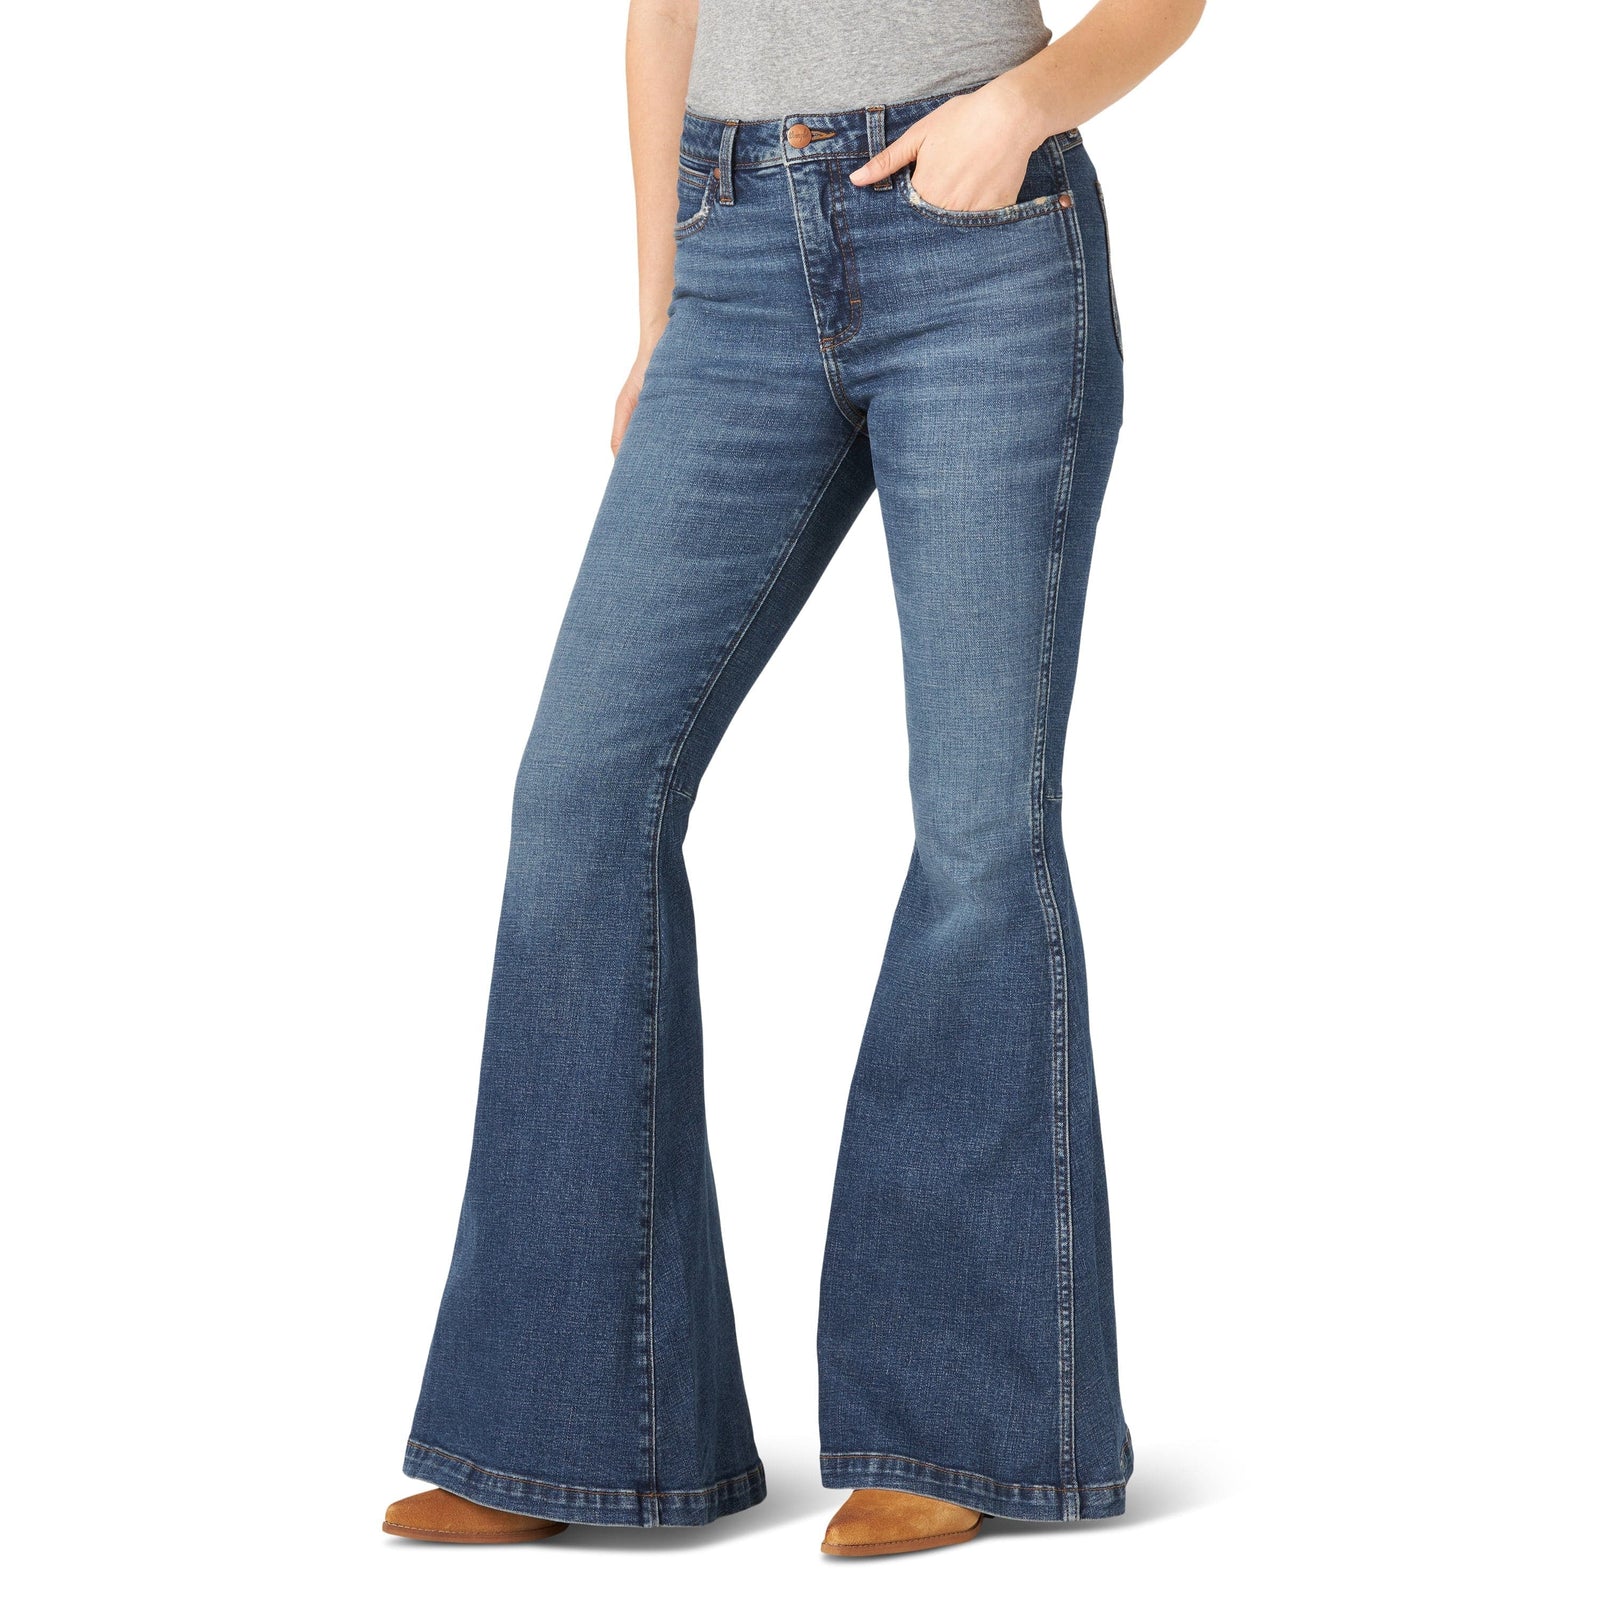 Wrangler Denim Jeans - Russell's Western Wear, Inc.